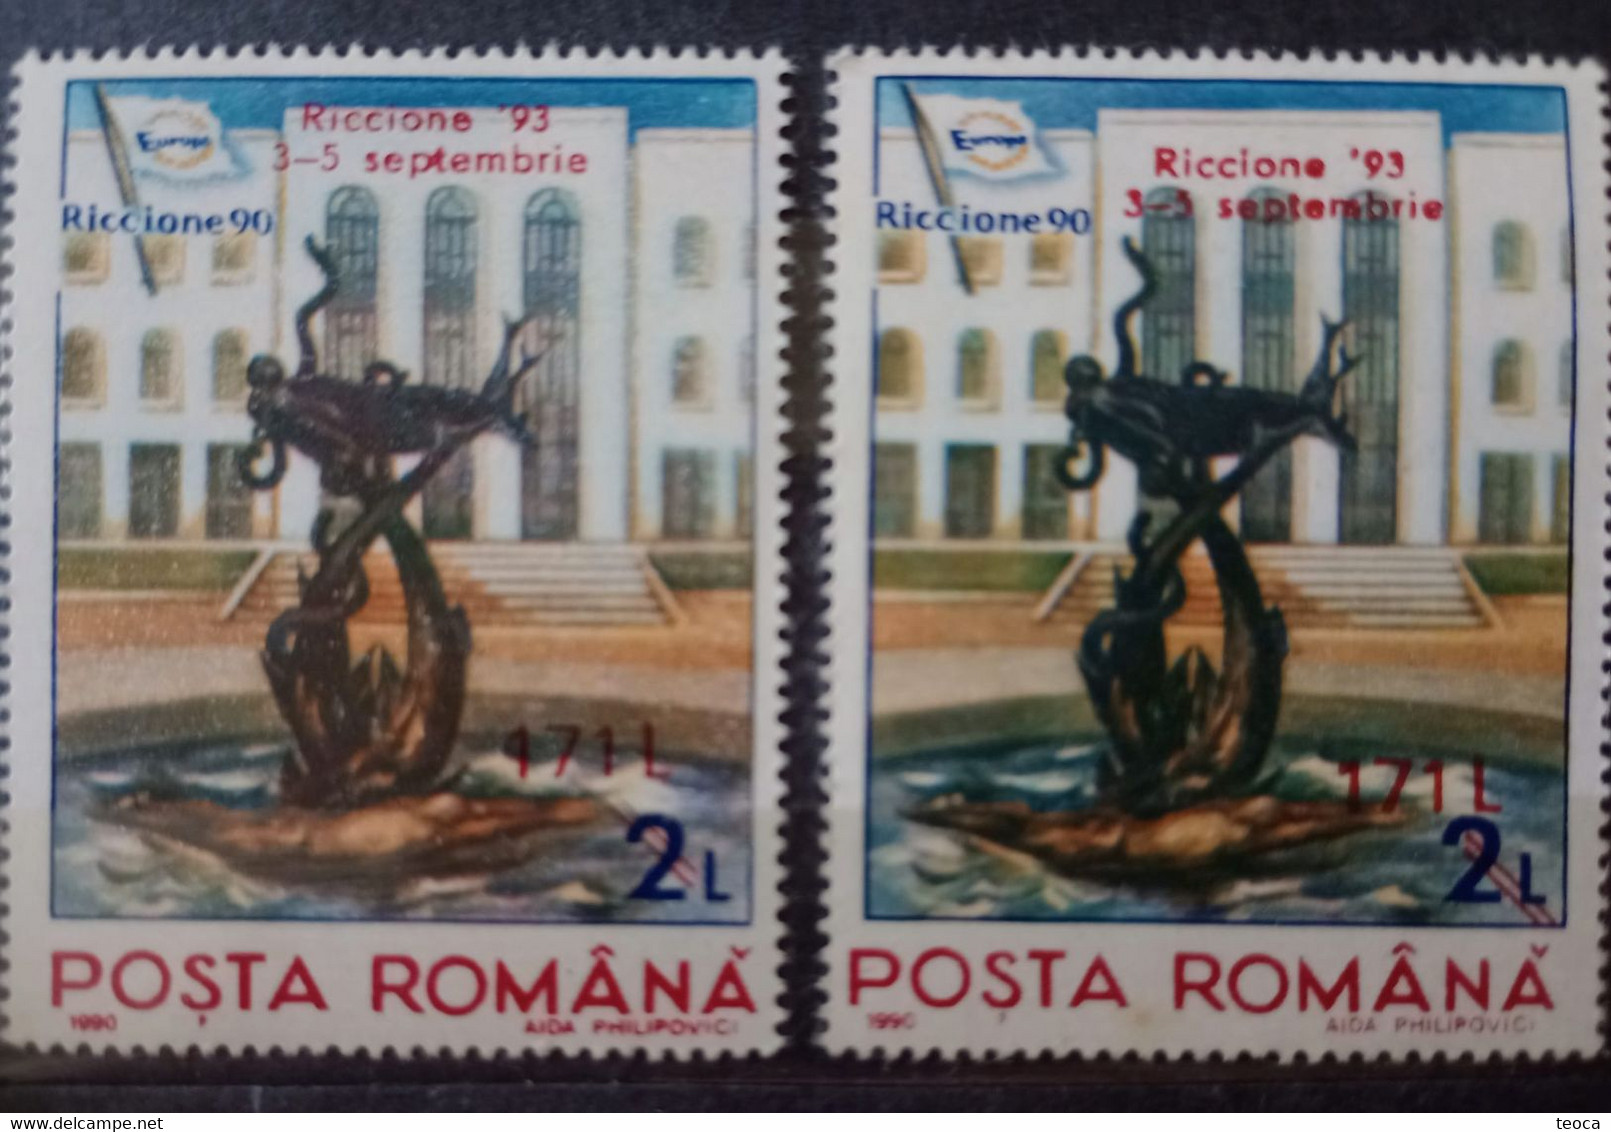 Stamps Errors Romania 1993, # Mi 4922 Printed With Misplaced Surcharge, DIFFERENT COLOR Unused Riccione - Varietà & Curiosità